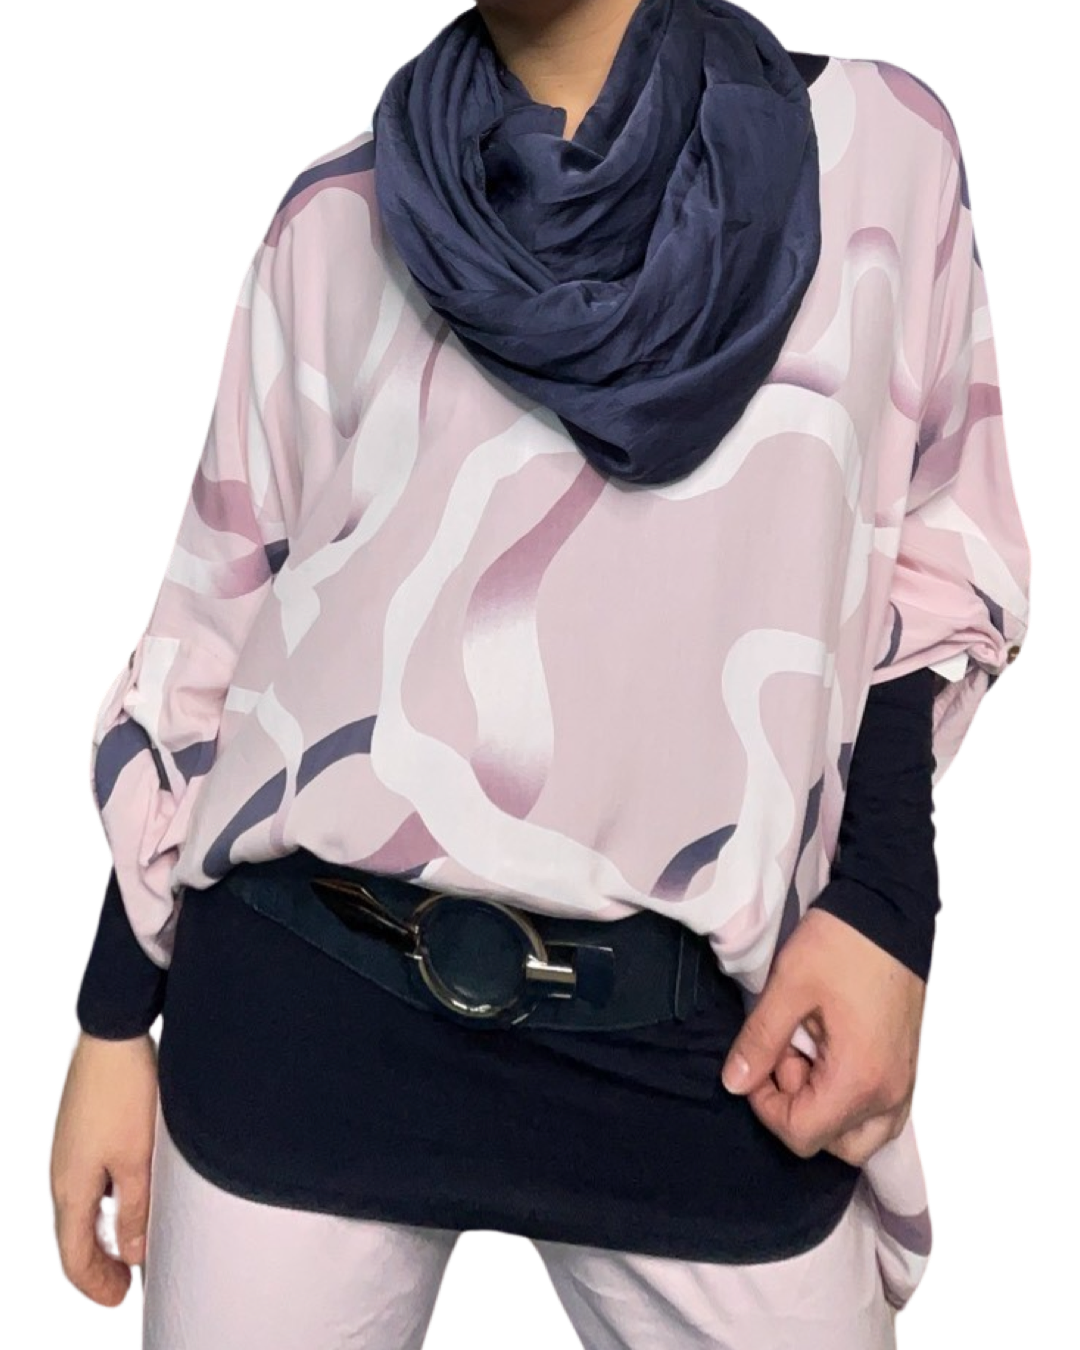 Blouse rose over size pour femme à motifs avec foulard bleu marin, chandail manche longue, ceinture et pantalons lilas.